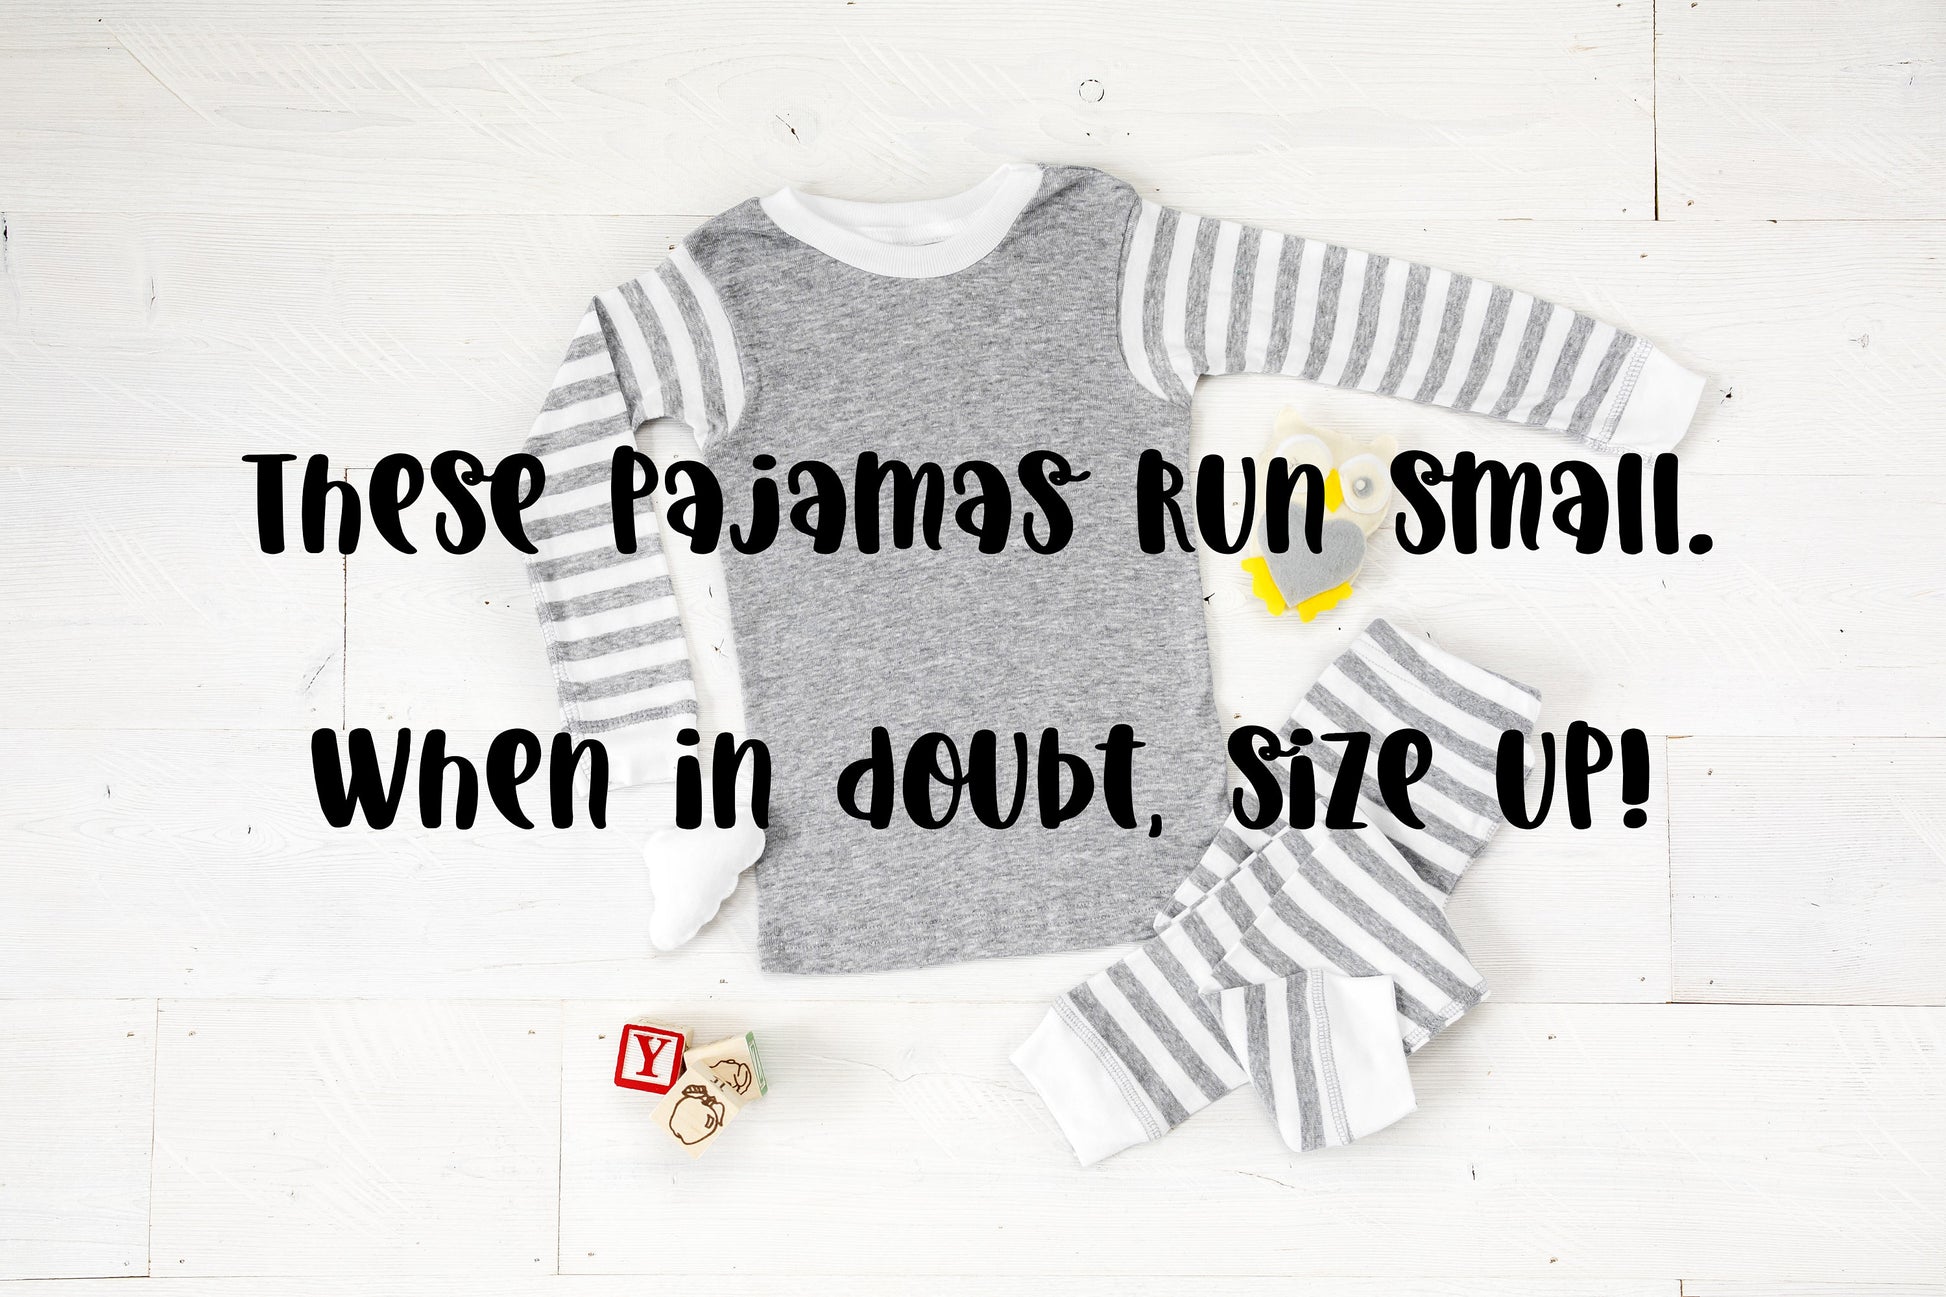 So Berry Cute Baby or Toddler Girl's Pajamas - toddler pjs - baby girl pajamas, cousin pajamas, matching sister pajamas